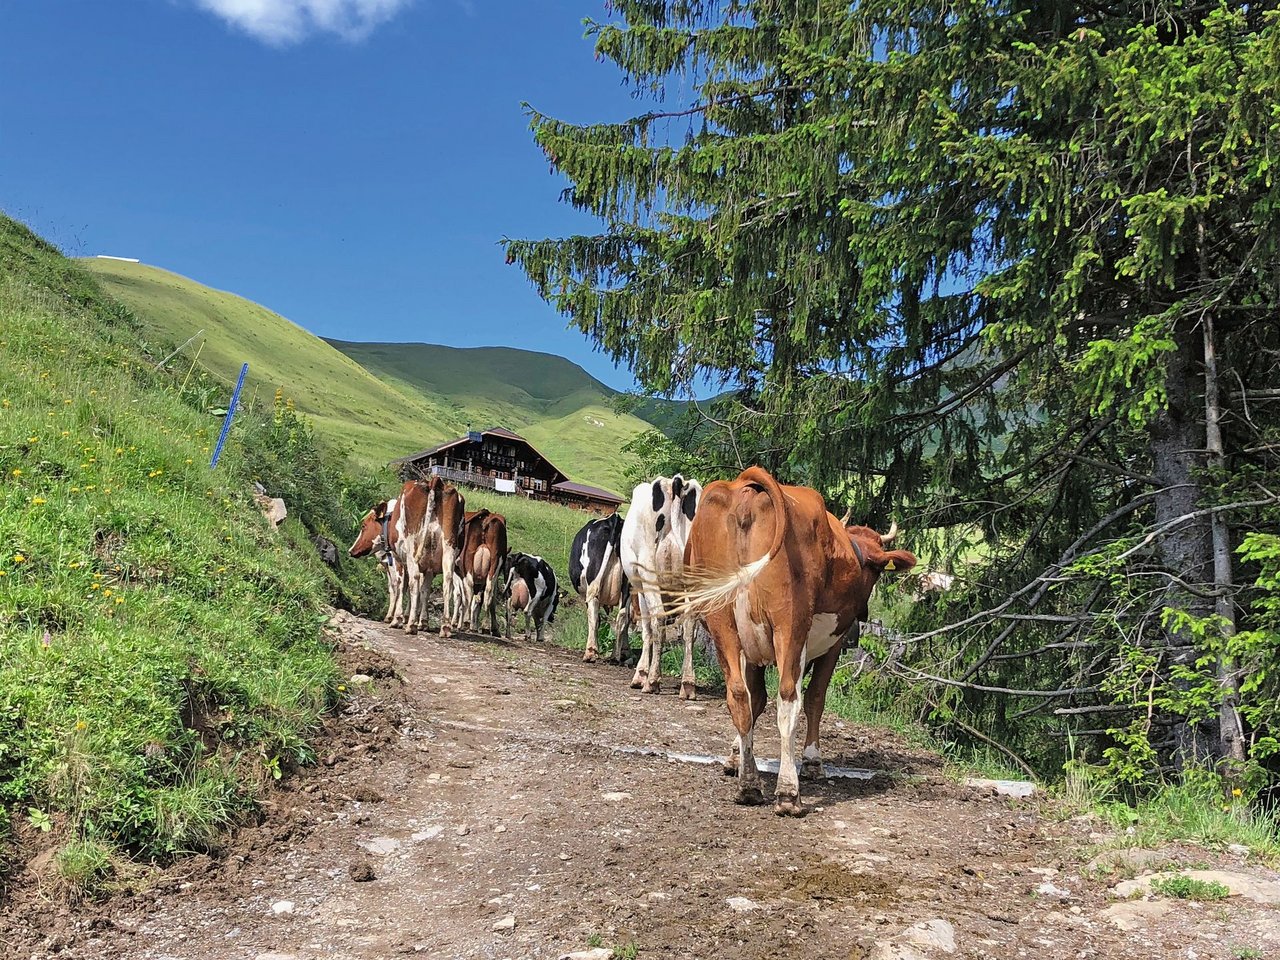 Vom Bühlerhof an der Lenk bis zur Hütte auf der Alp Pommern dauert der Alpaufzug rund drei Stunden. Der Weg ist steil,steinig und für die Kühe anstrengend. Bild: Jasmine Baumann